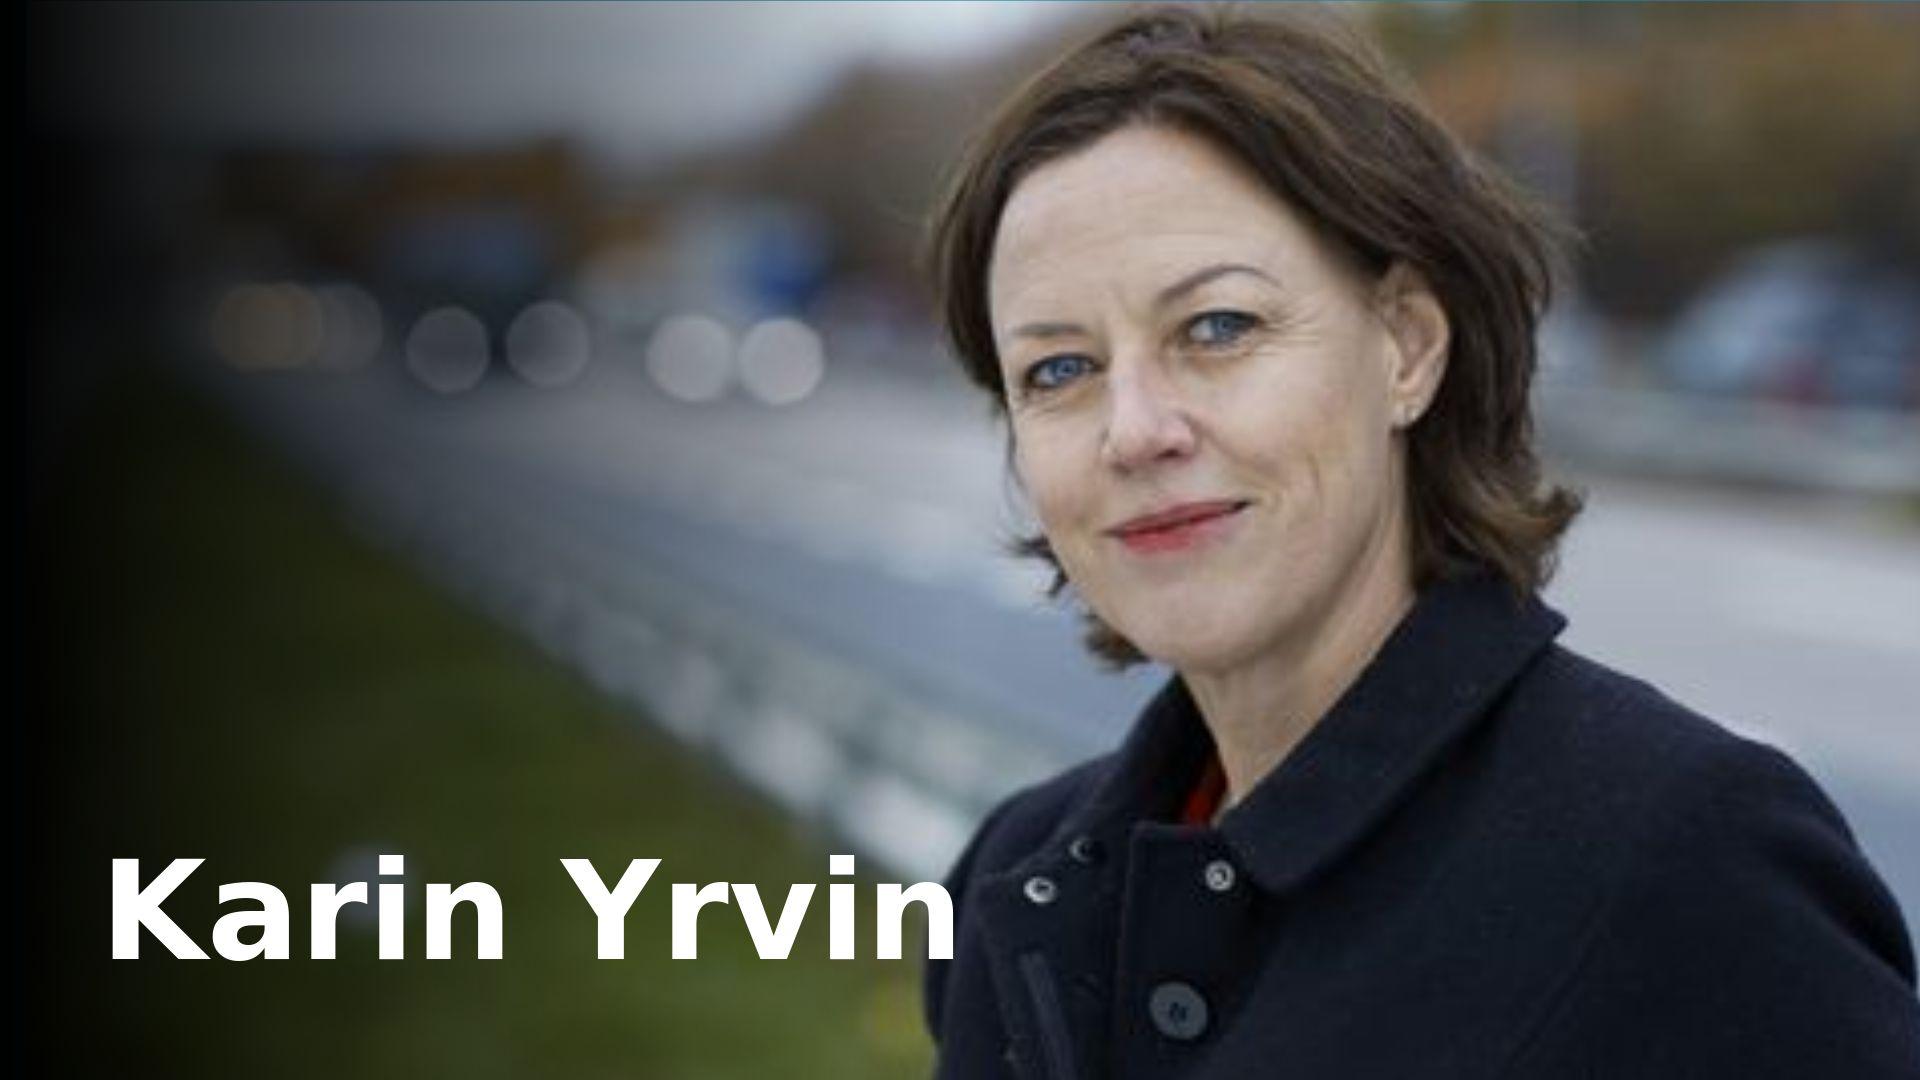 Karin Yrvin reagerer på psykologiprofessor Anne-Kari Torgalsbøens kritiske holdning til offentlig eksponering av psykiske vansker. Yrvin er selv sårbar for bipolar lidelse